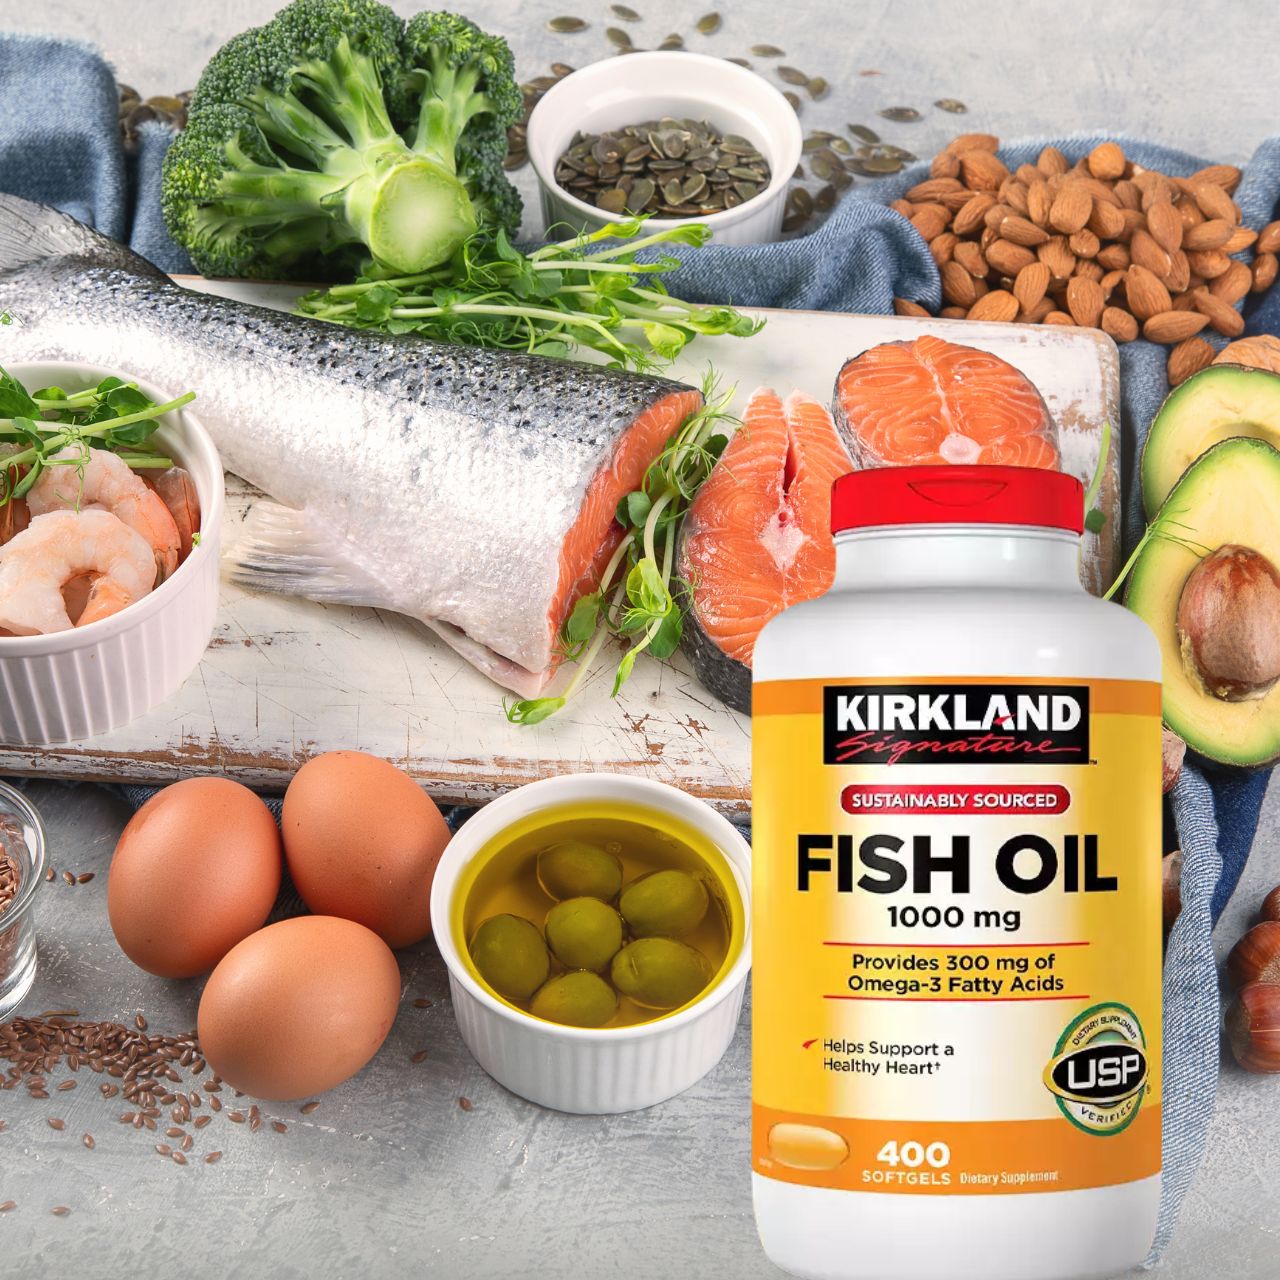 Hình ảnh Omega 3 Mỹ Kirkland Signature Fish Oil 1000mg Hỗ trợ sức khỏe não bộ, hệ thần kinh, Tim mạch, Khớp, Bổ mắt, Làm đẹp da - OZ Slim Store